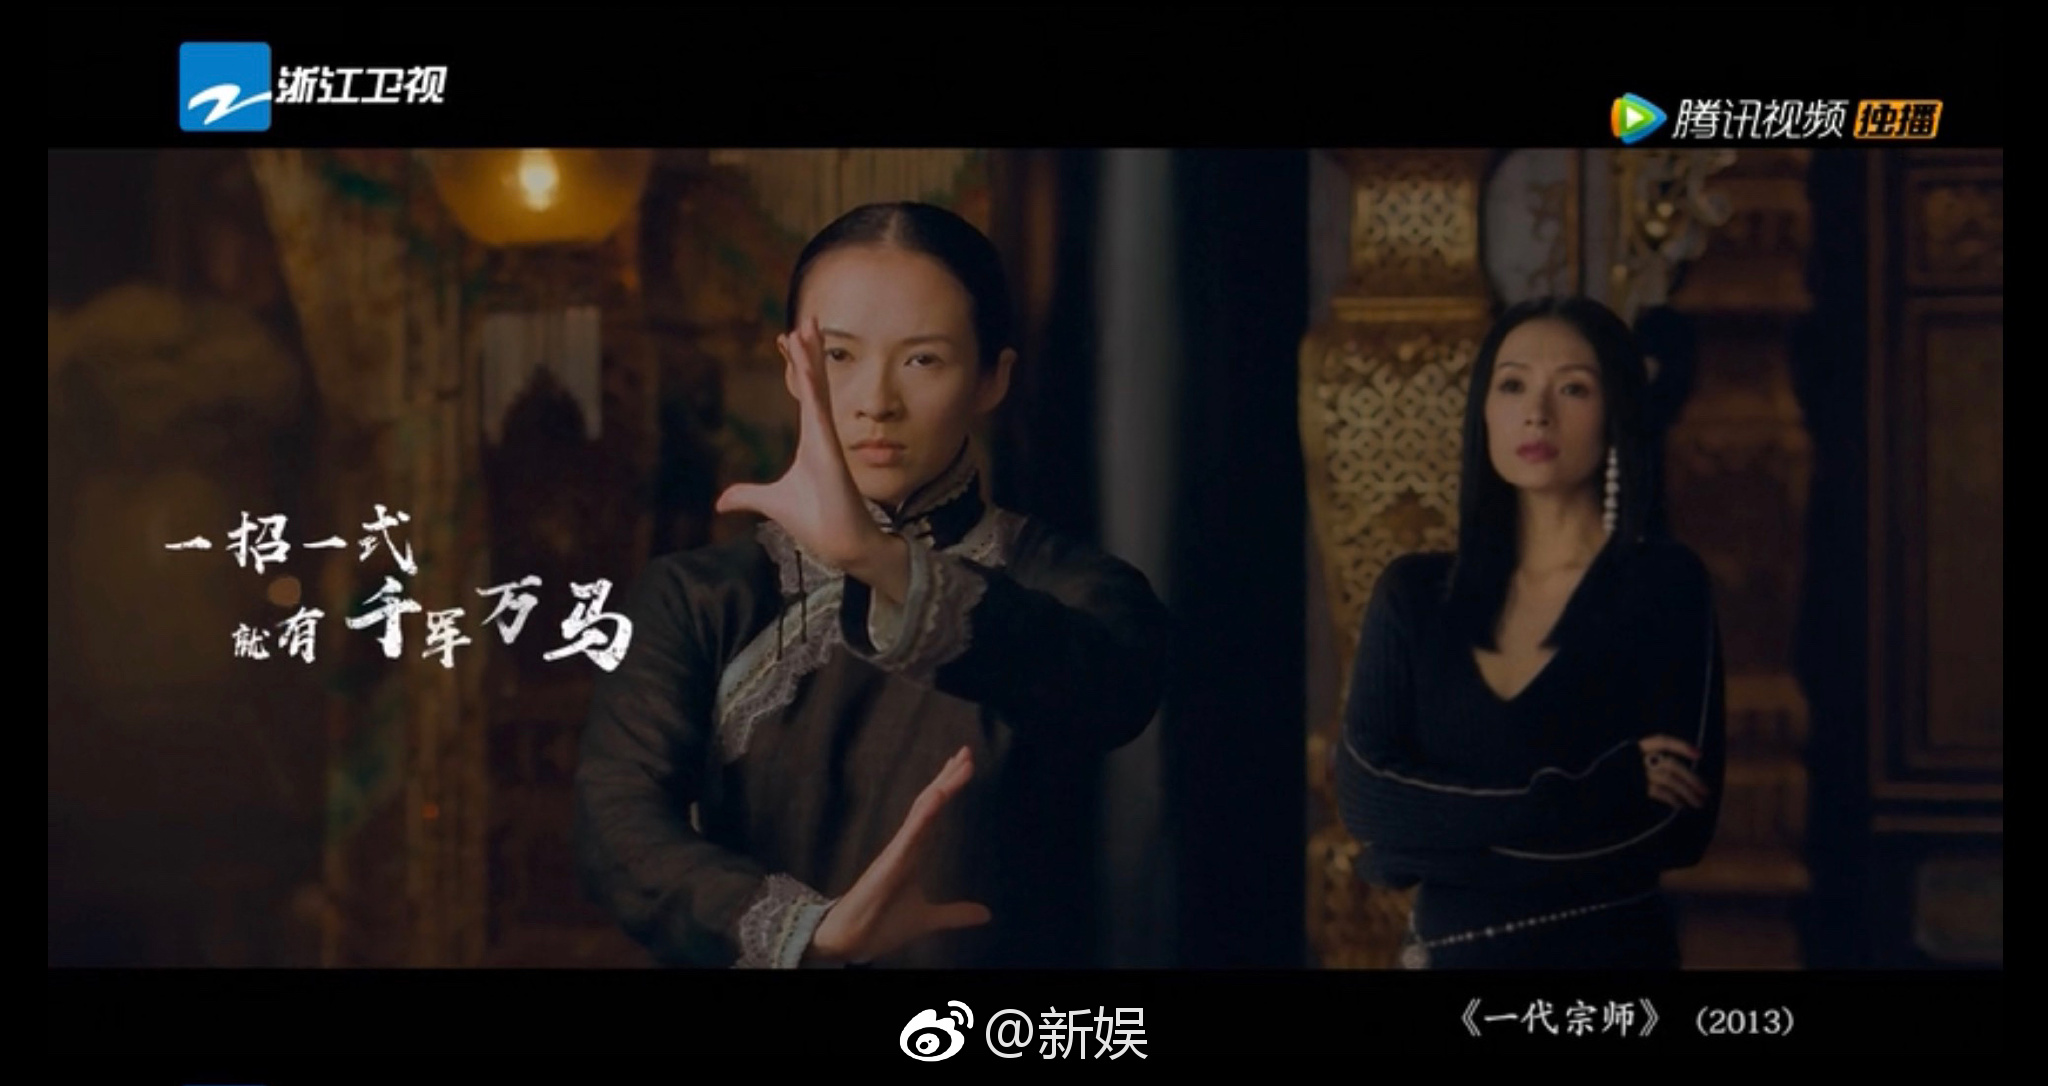 《我就是演员》章子怡的导师宣传片终于压轴登场